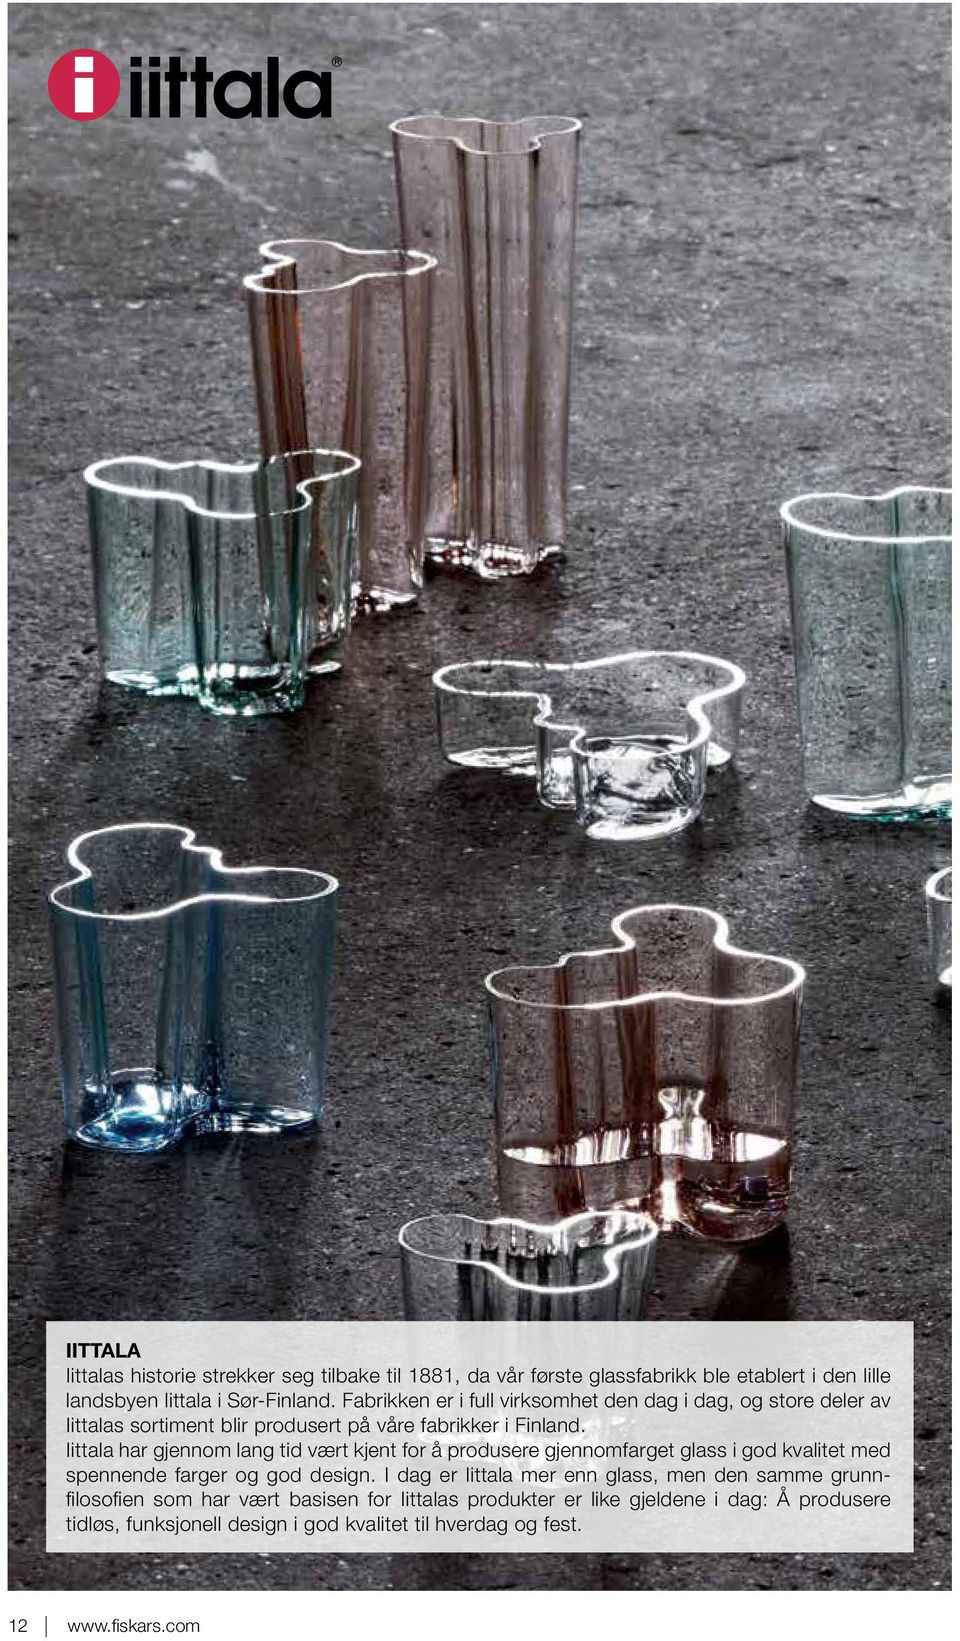 Iittala har gjennom lang tid vært kjent for å produsere gjennomfarget glass i god kvalitet med spennende farger og god design.